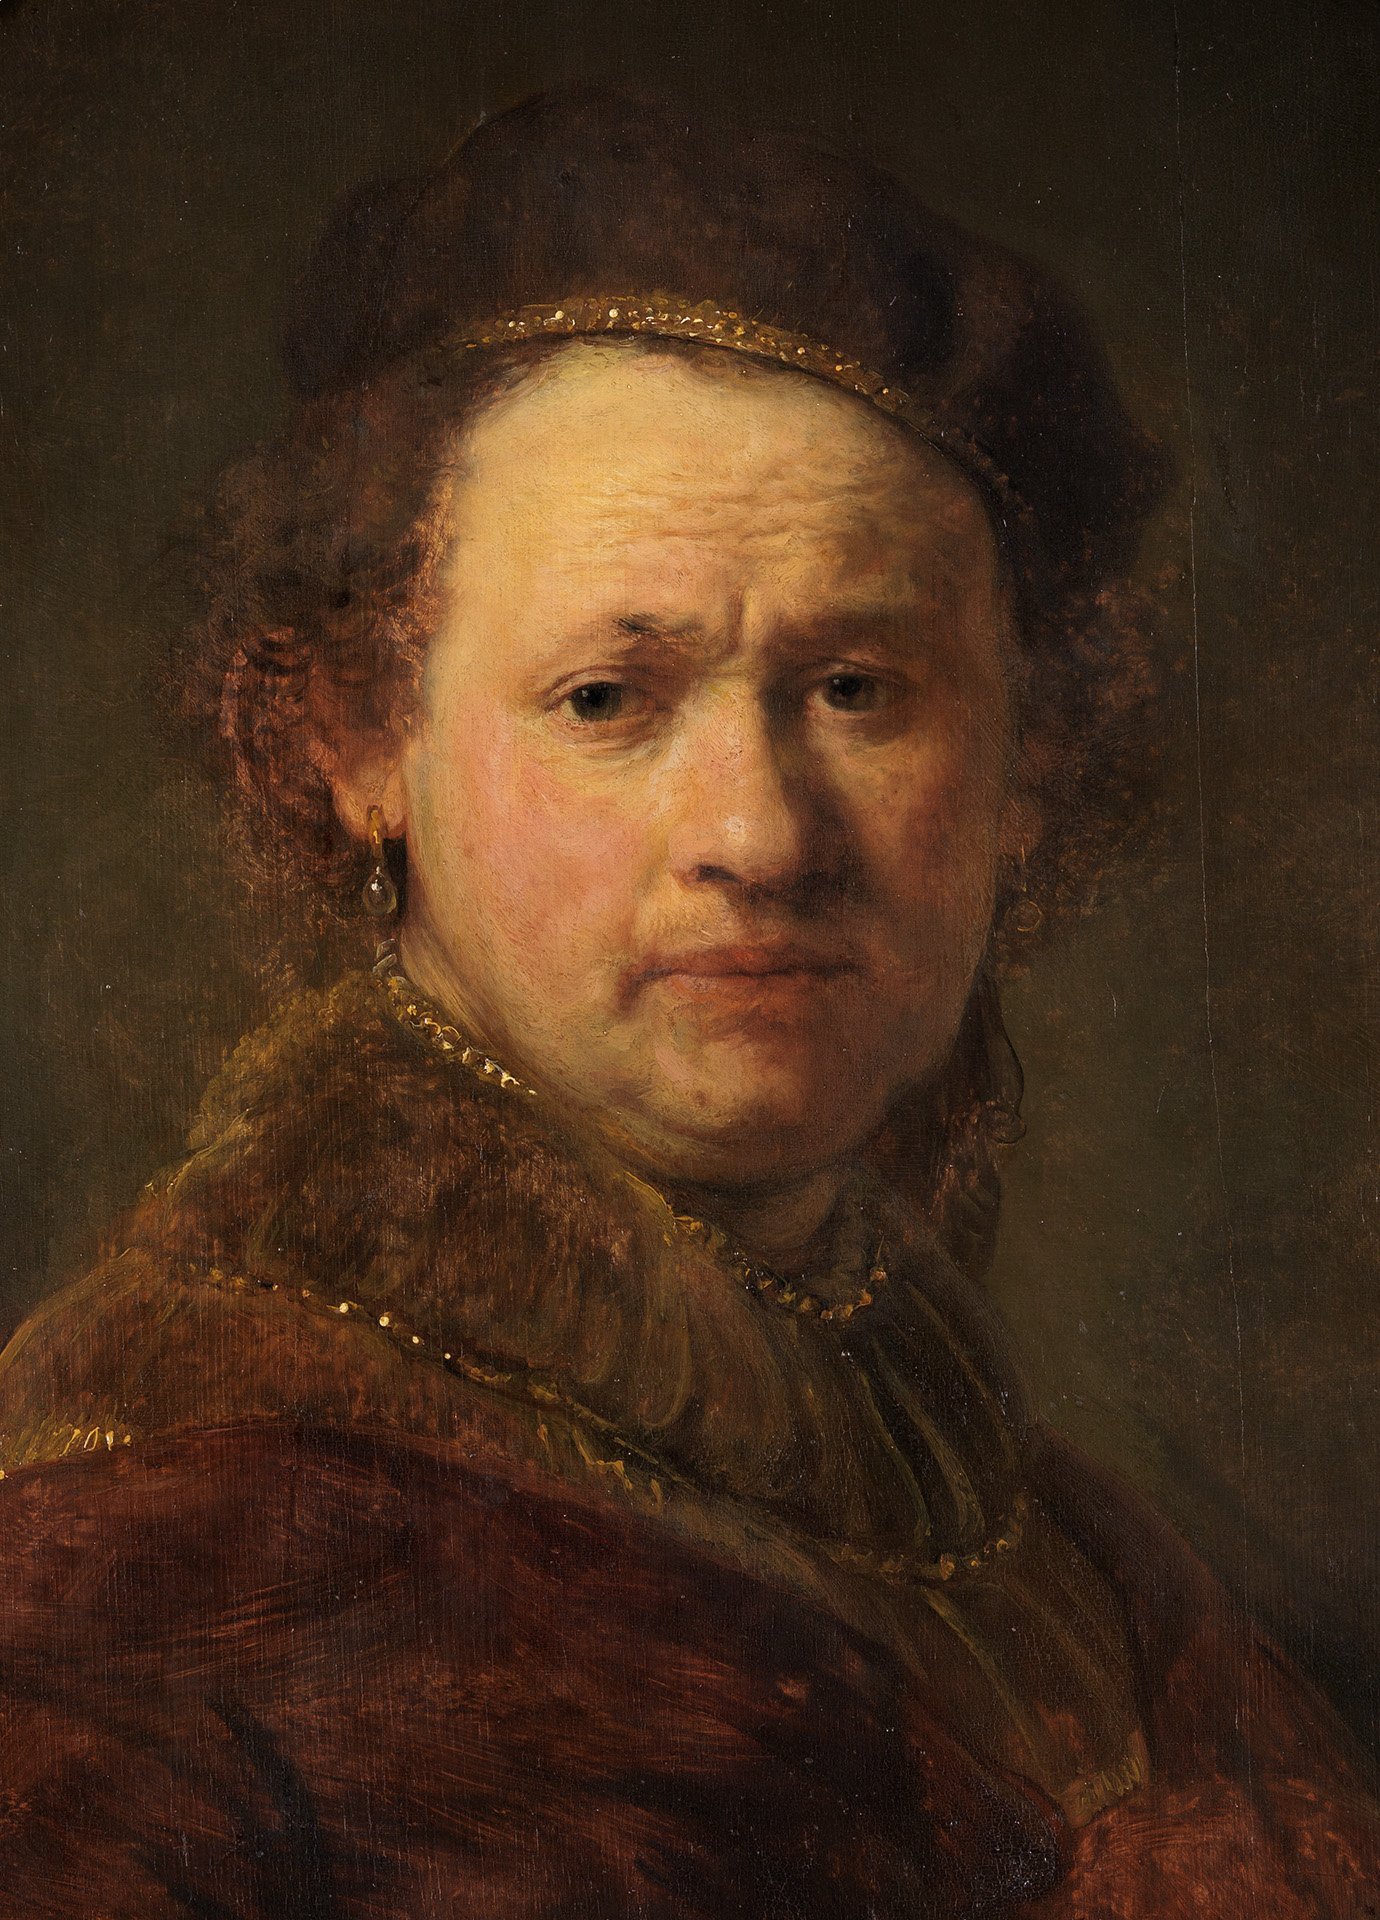 Abbildung des Selbstbildnis von Rembrandt